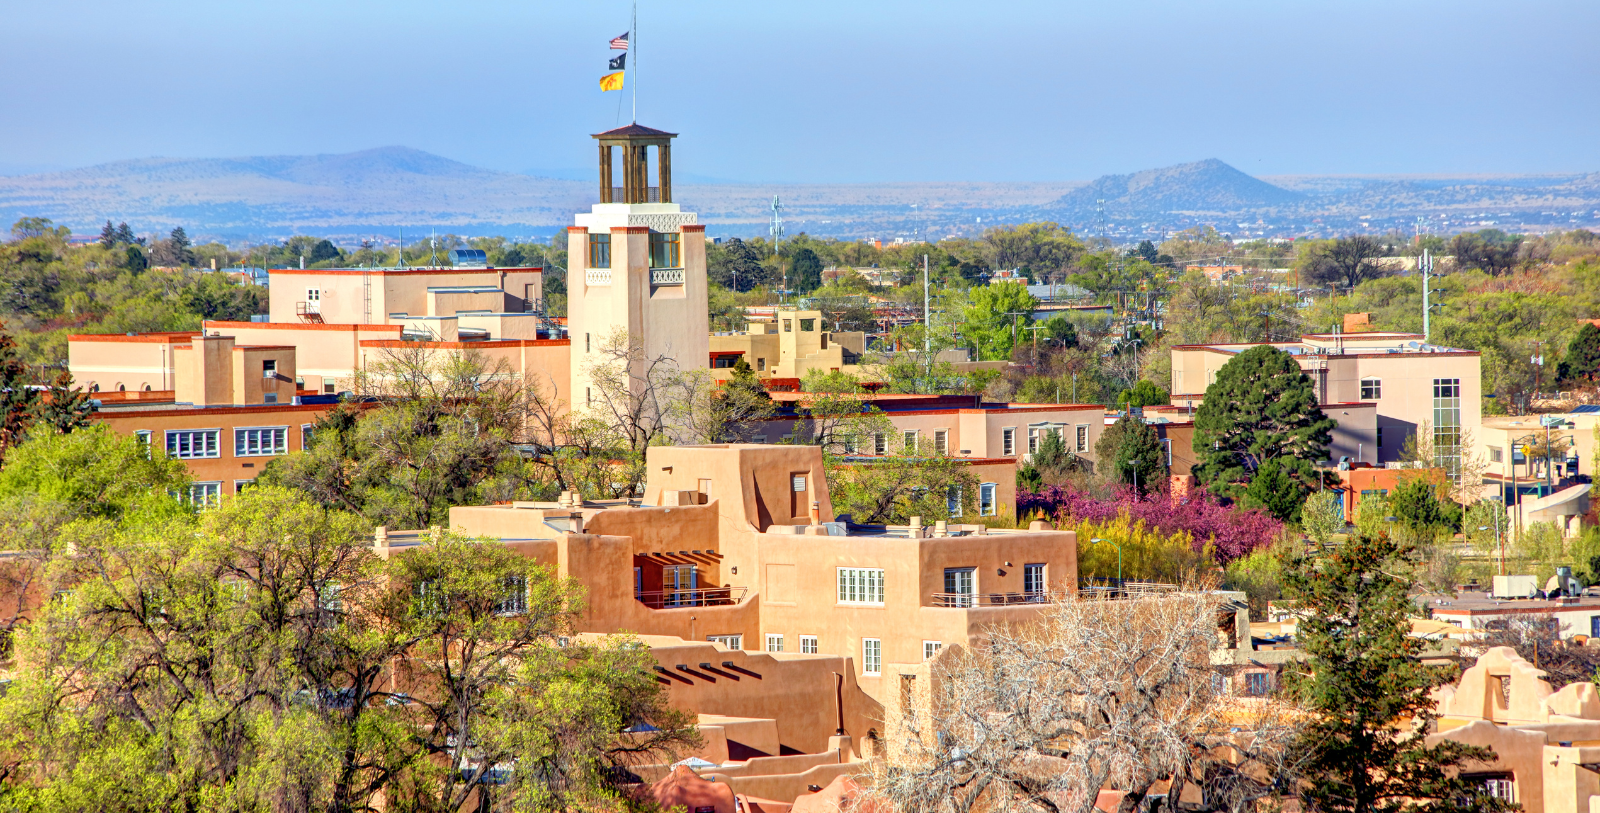 Explore the historic city of Santa Fe, New Mexico.